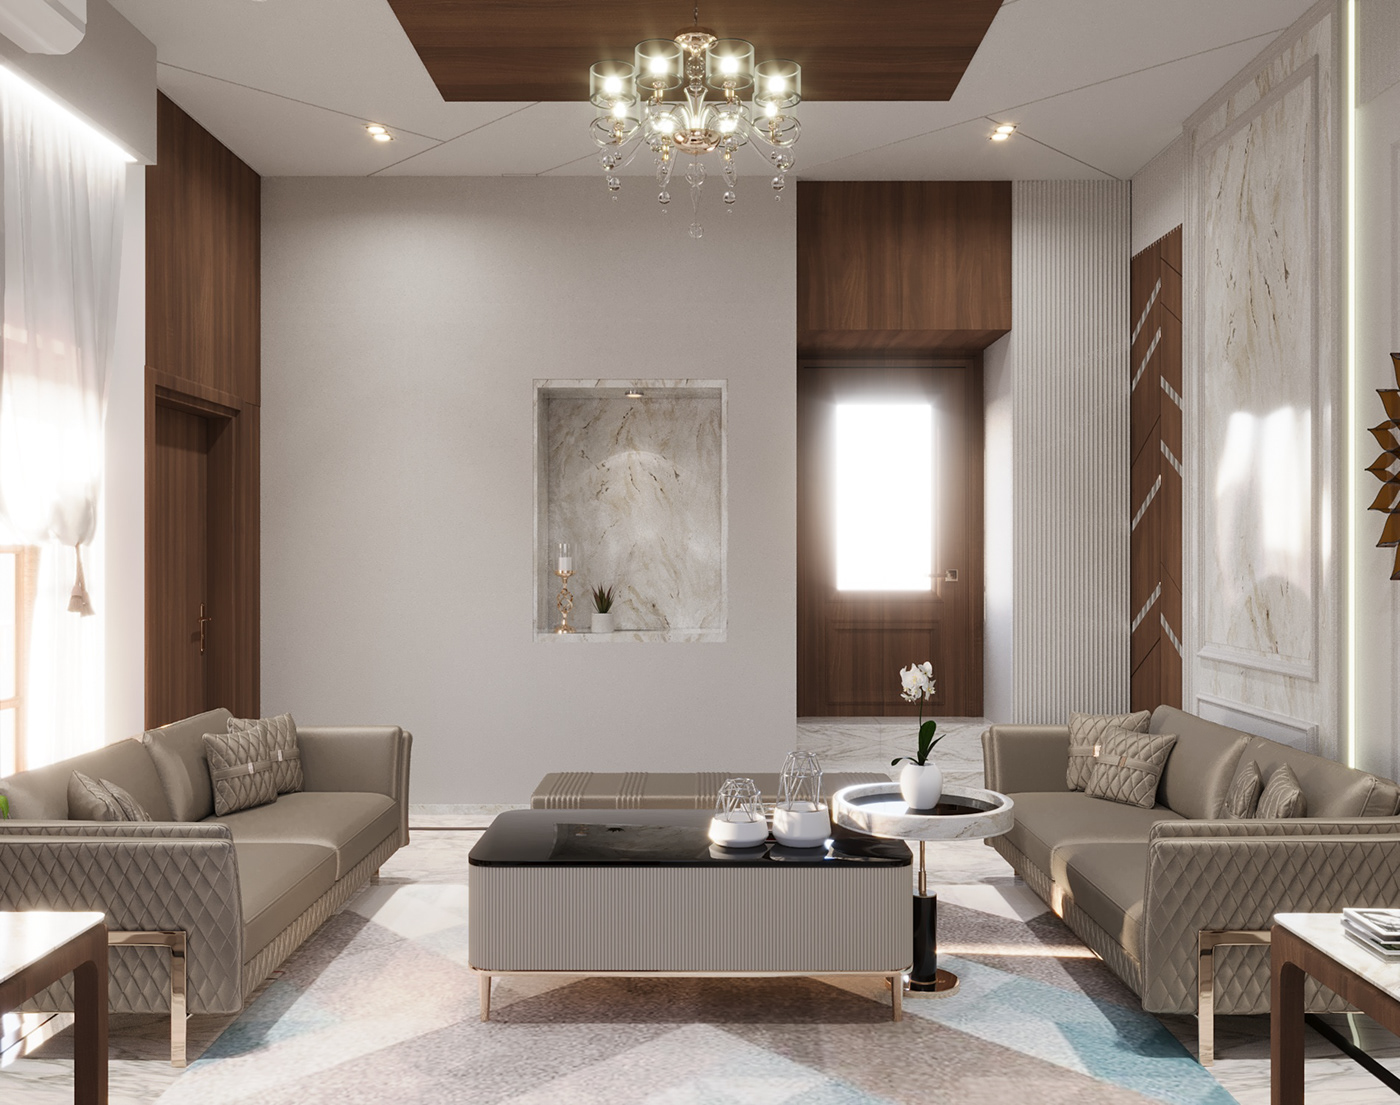 Interior architecture visualization Render 3D modern 3ds max beige brown wine